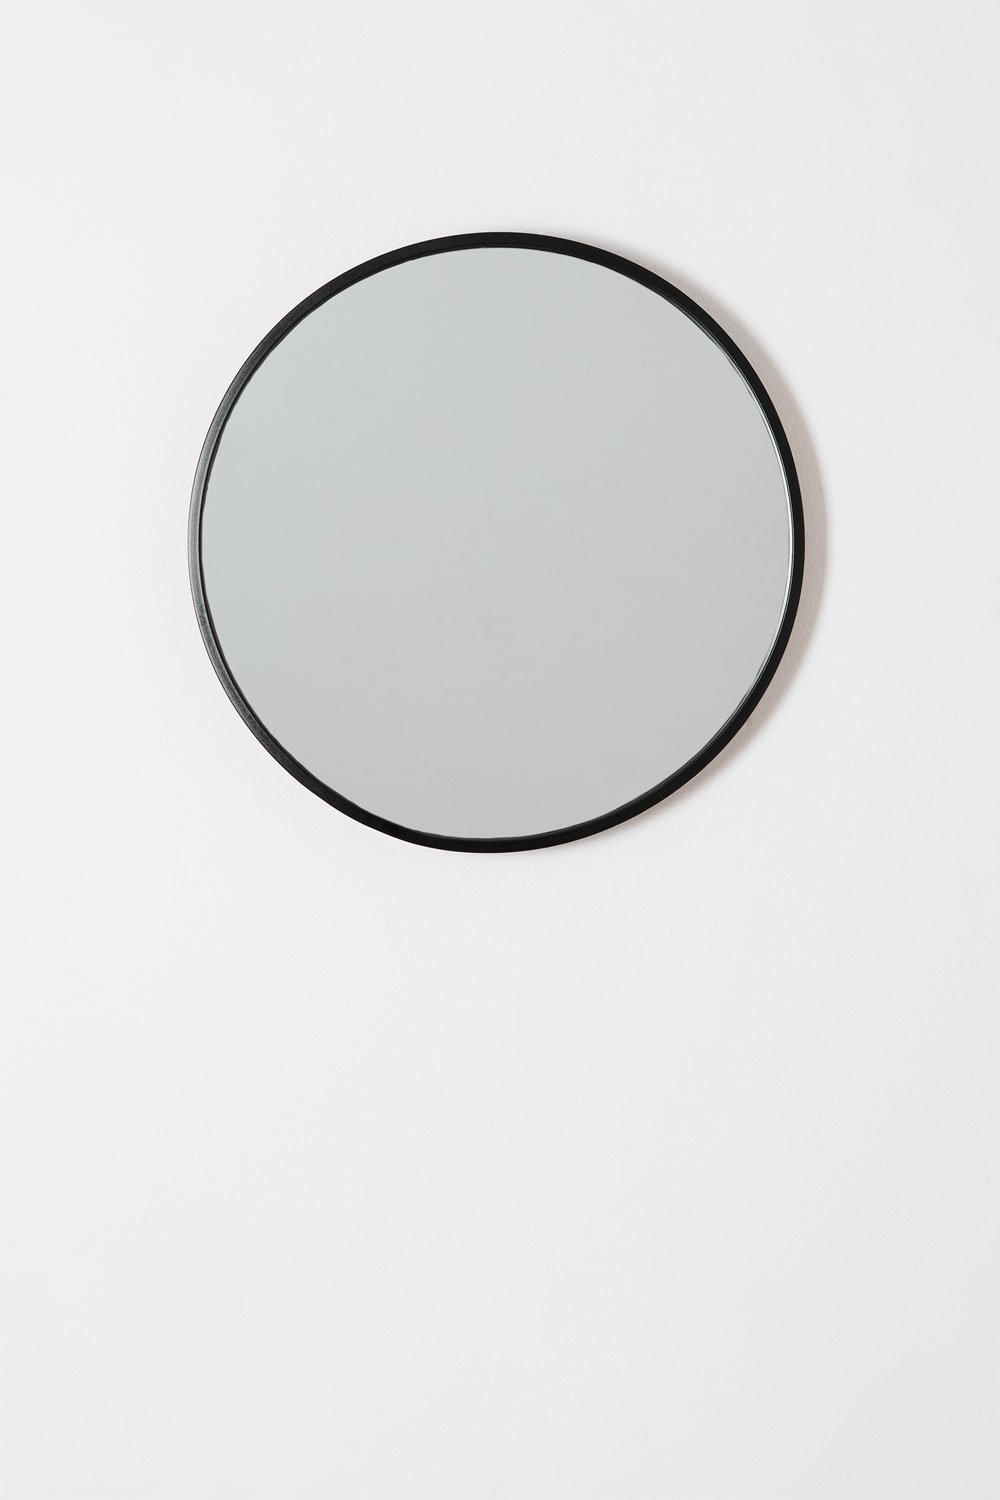 Okrągłe żelazne lustro ścienne (średnica 45 cm) Oliverton, obrazek w galerii 2